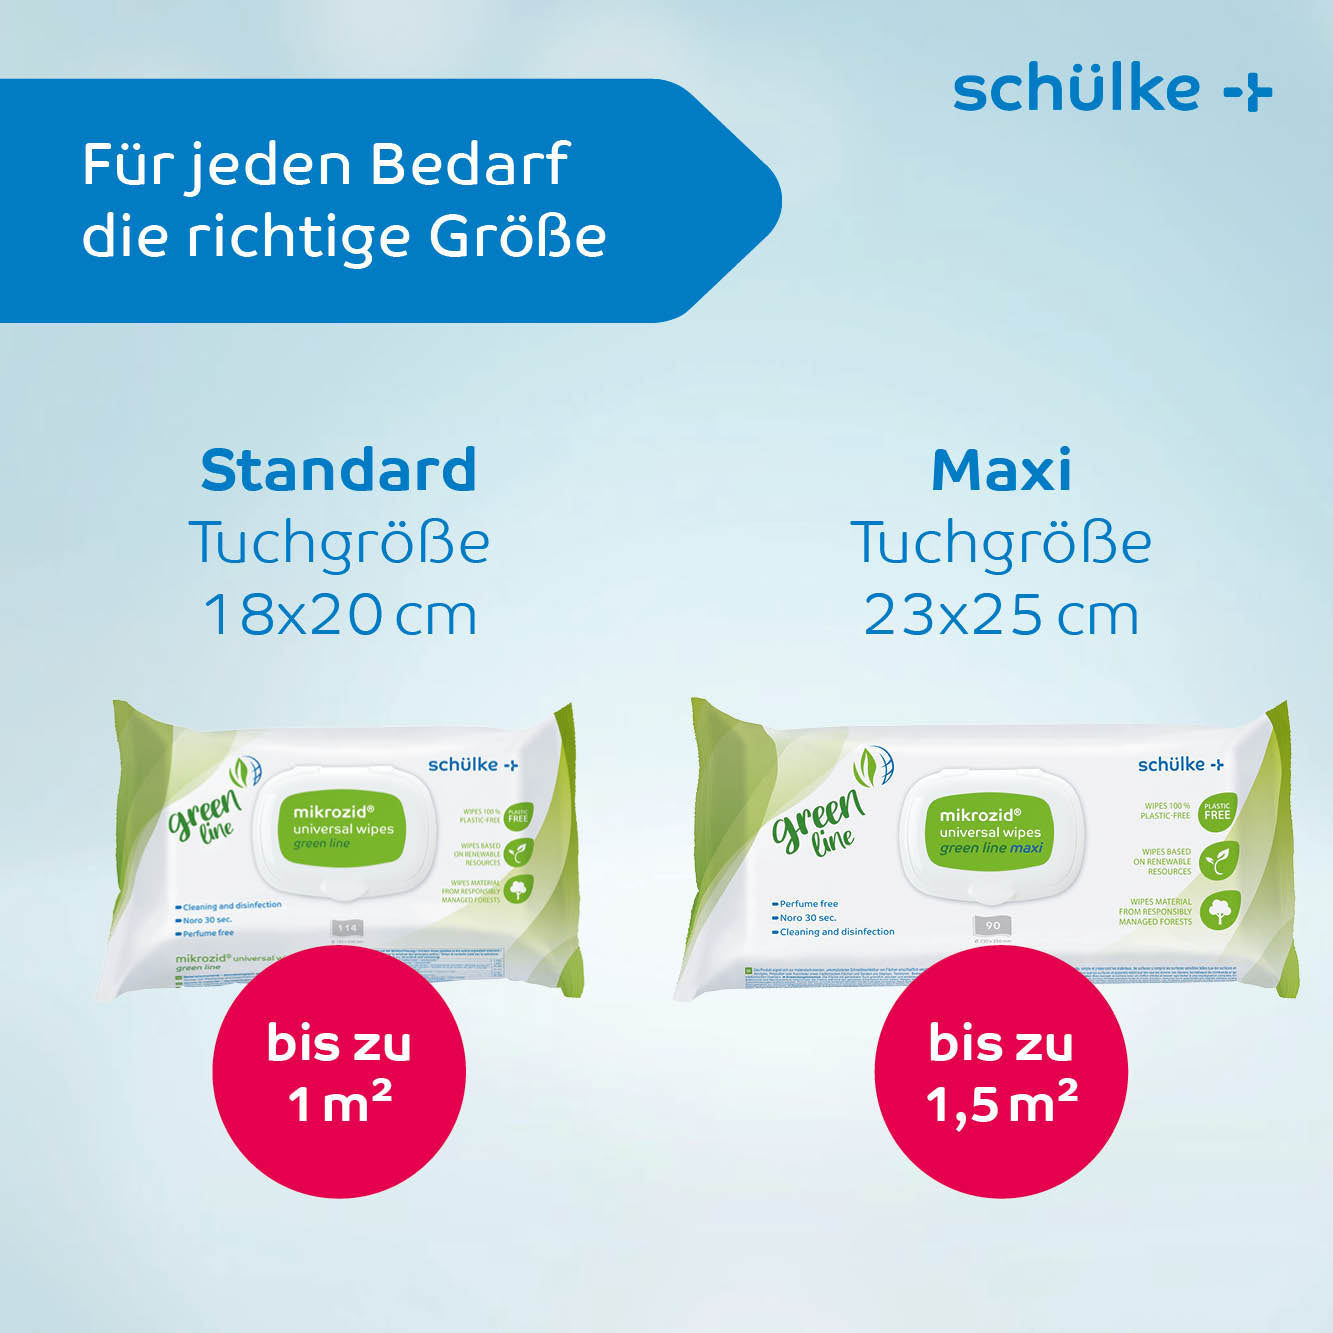 Das Bild zeigt zwei Packungen Schülke & Mayr GmbH mikrozid® universal wipes green line Desinfektionstücher | Packung (114 Stück) unter dem Label „green line“. Die Standardgröße ist 18x20cm und deckt bis zu 1m² ab, während die Maxigröße 23x25cm ist und bis zu 1,5m² abdeckt. Perfekt für die Infektionsprävention, der Text ist auf Deutsch.